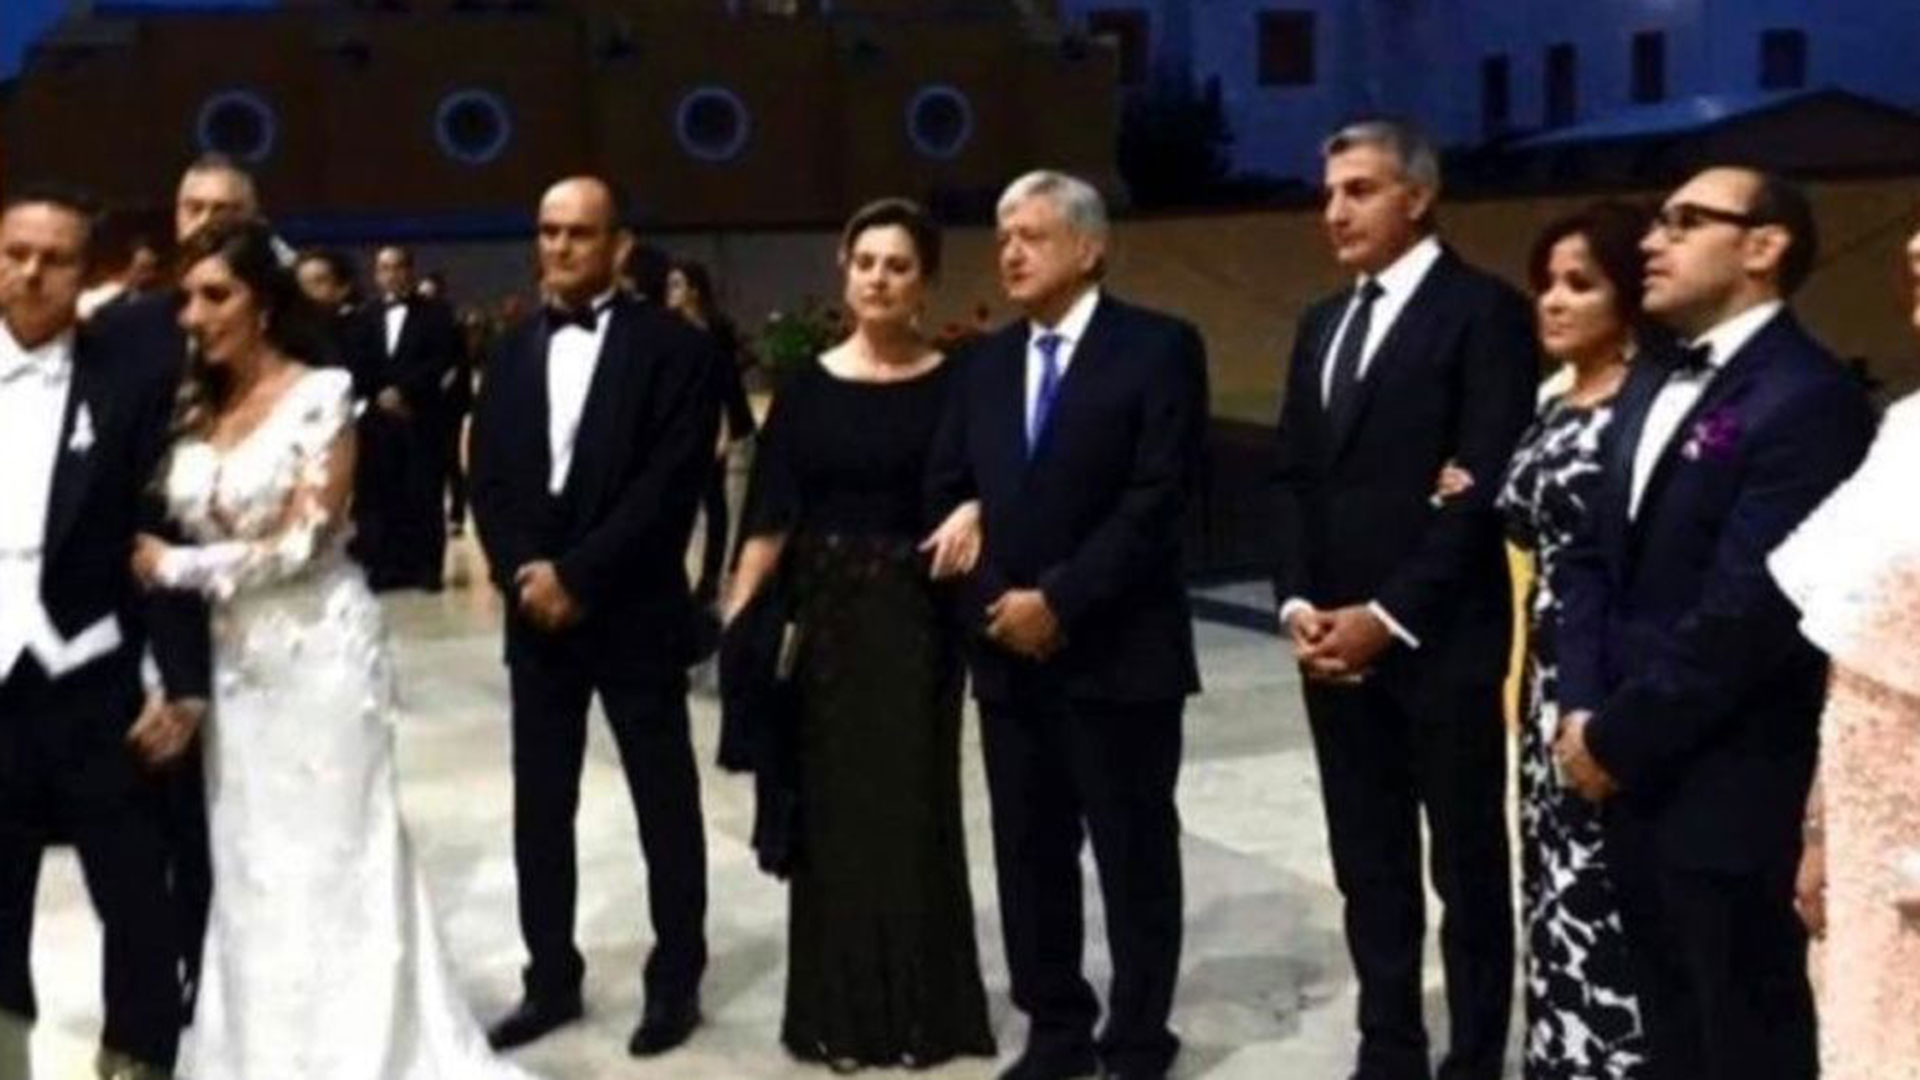 Los invitados, entre ellos, López Obrador y su esposa Beatriz Gutiérrez.